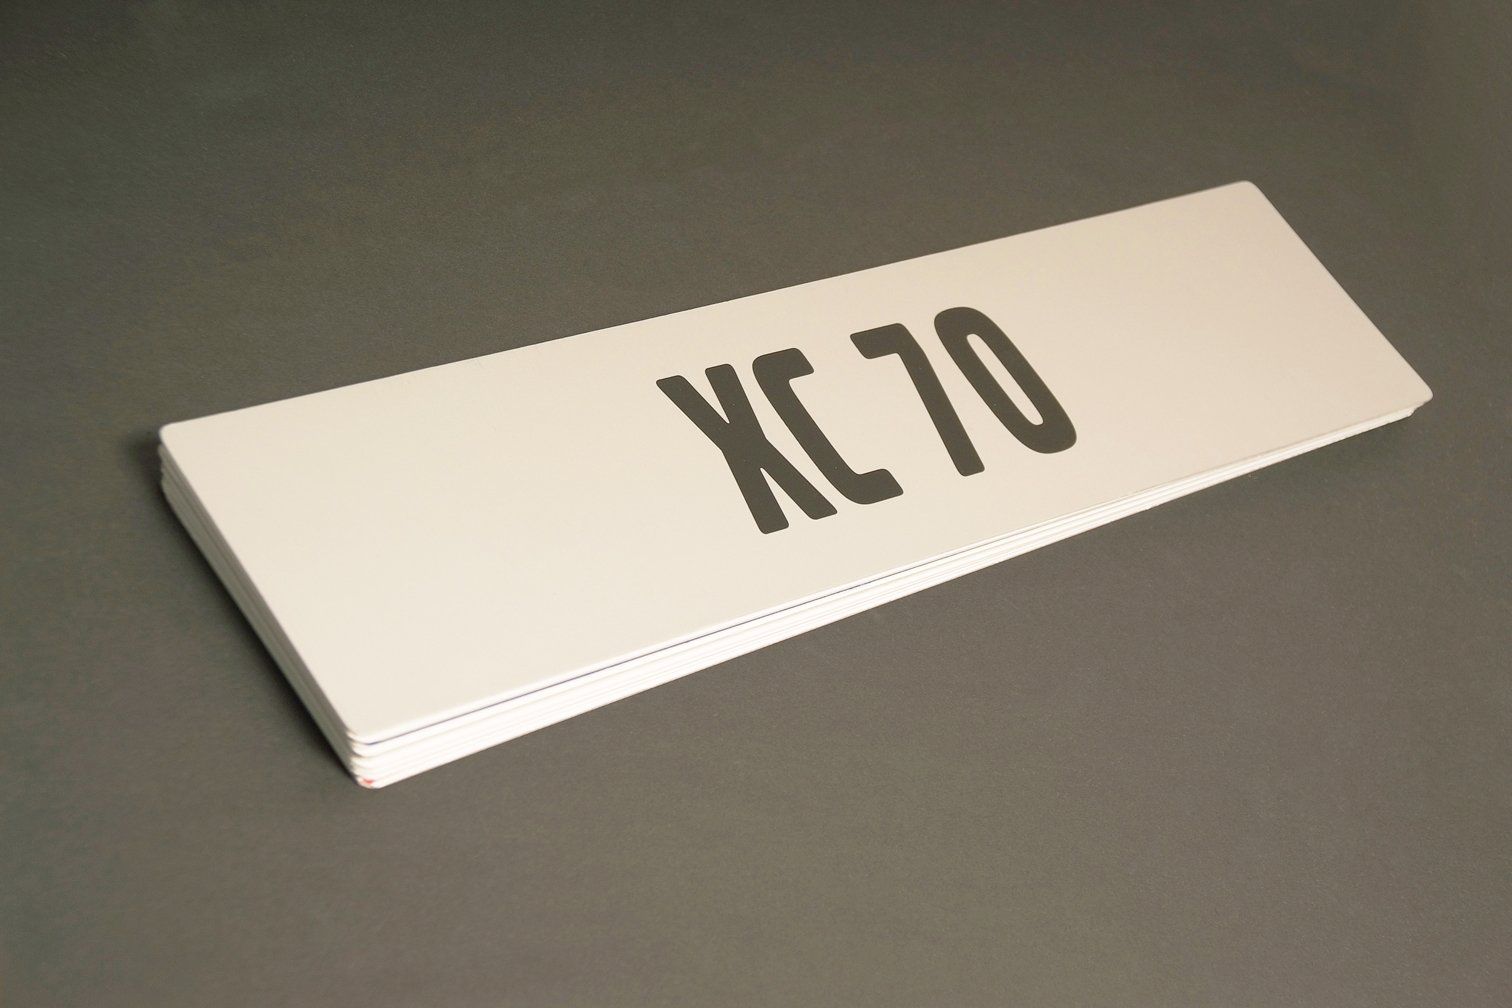 Ein weißes Schild mit der Aufschrift xc70